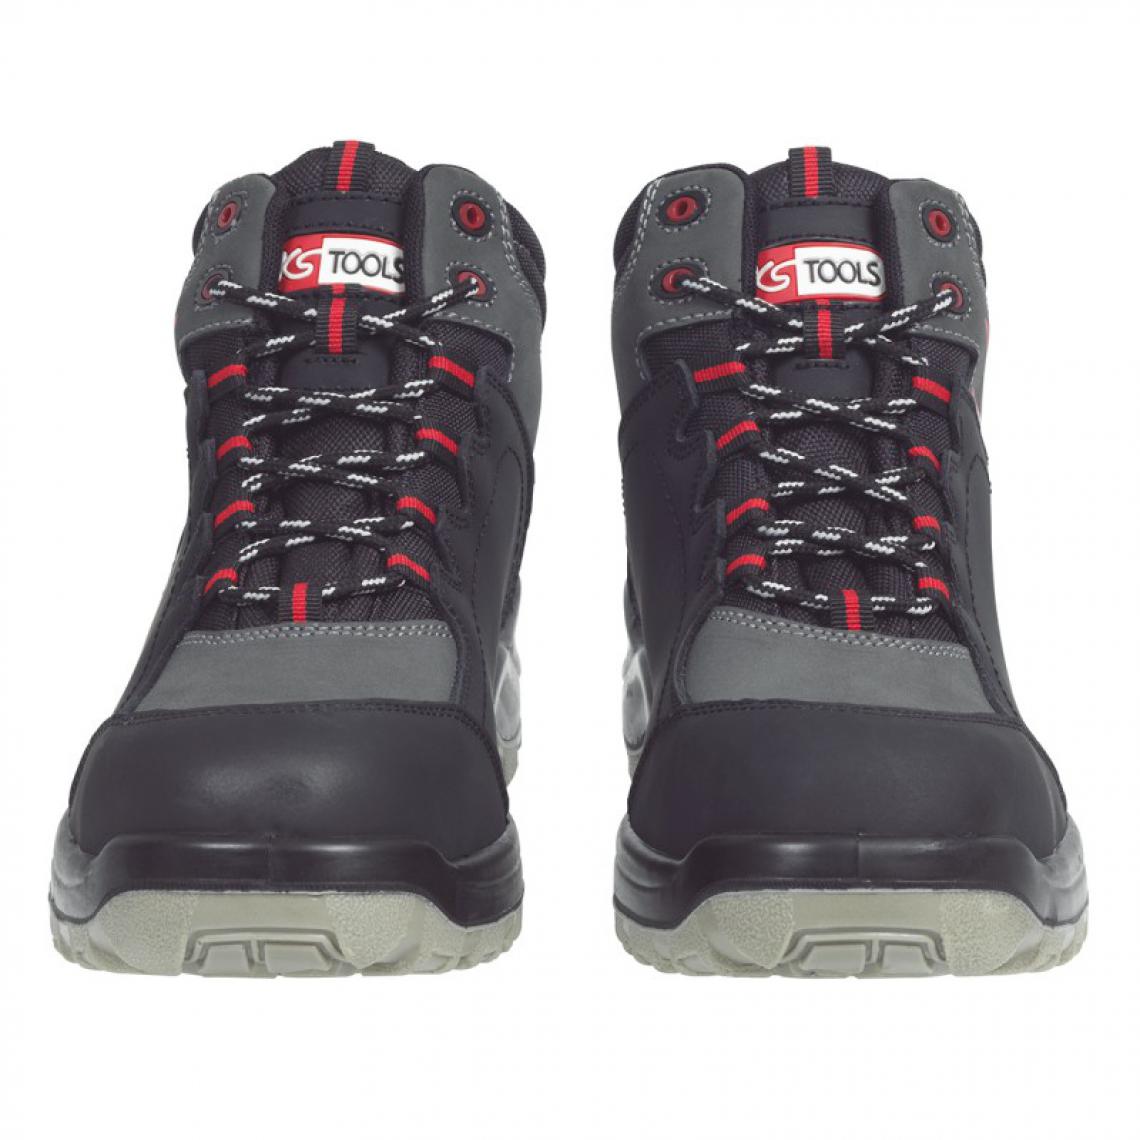 Kstools - Chaussures de sécurité montante KSTOOLS Couleur grise et noire taille 39 - Equipement de Protection Individuelle